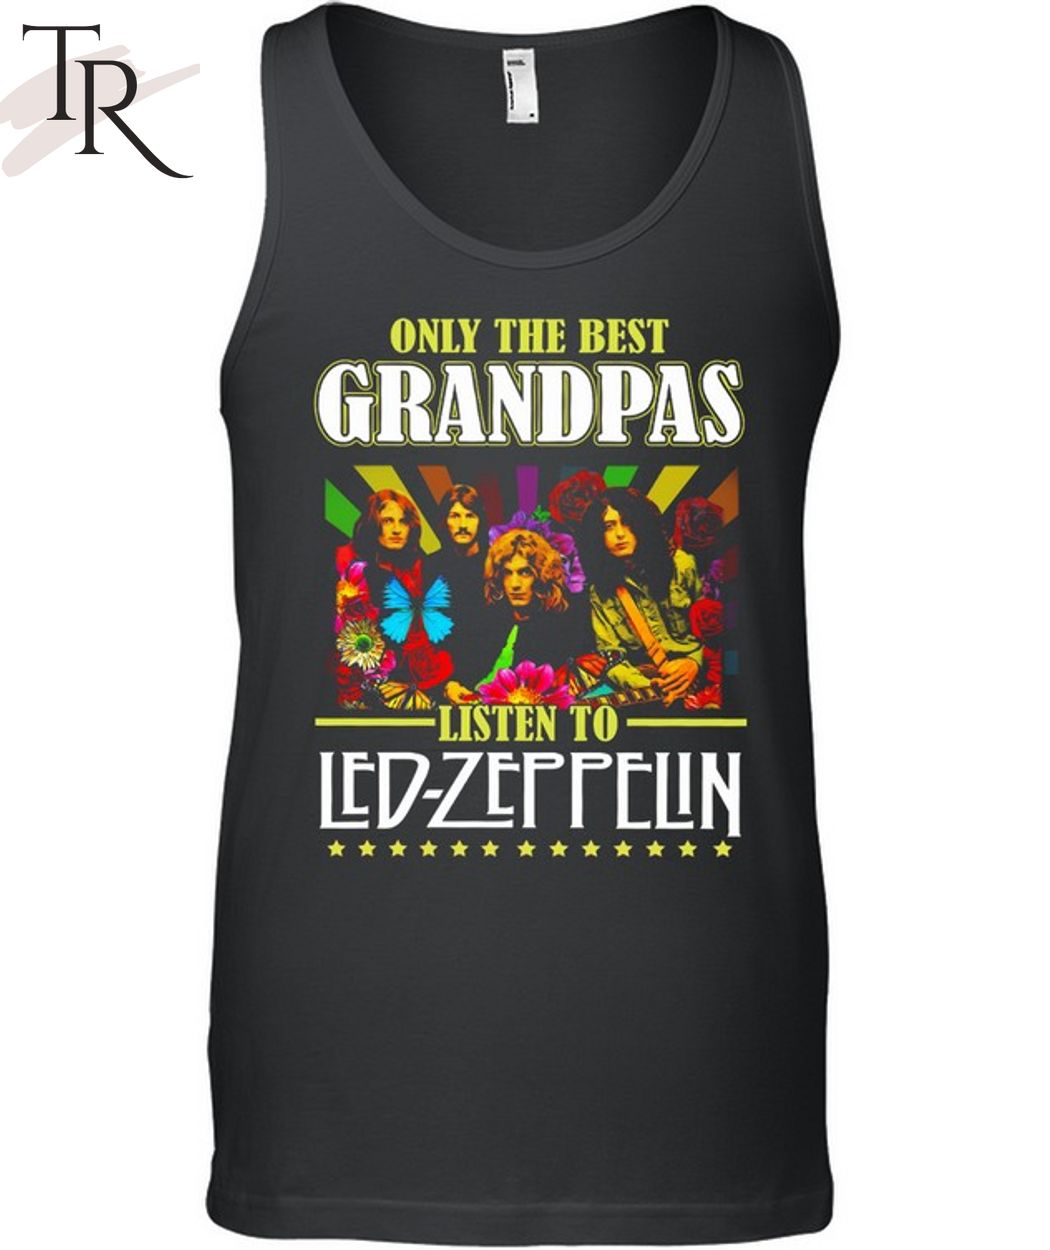 Only The Best Grandpas Listen To Led Zeppelin T-Shirt - Torunstyle